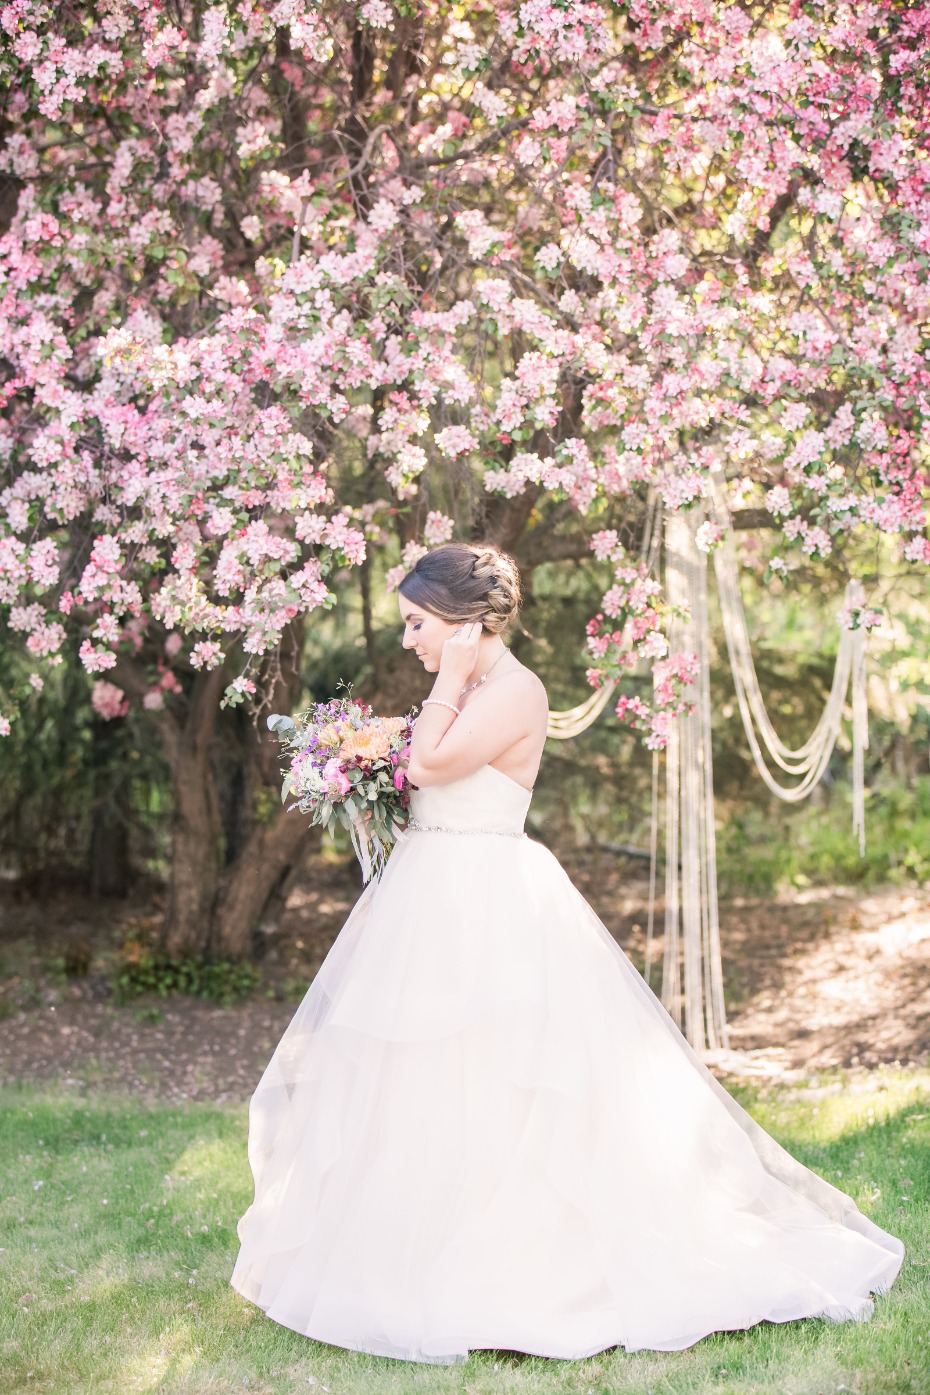 Bridal portrait under the cherry blossoms